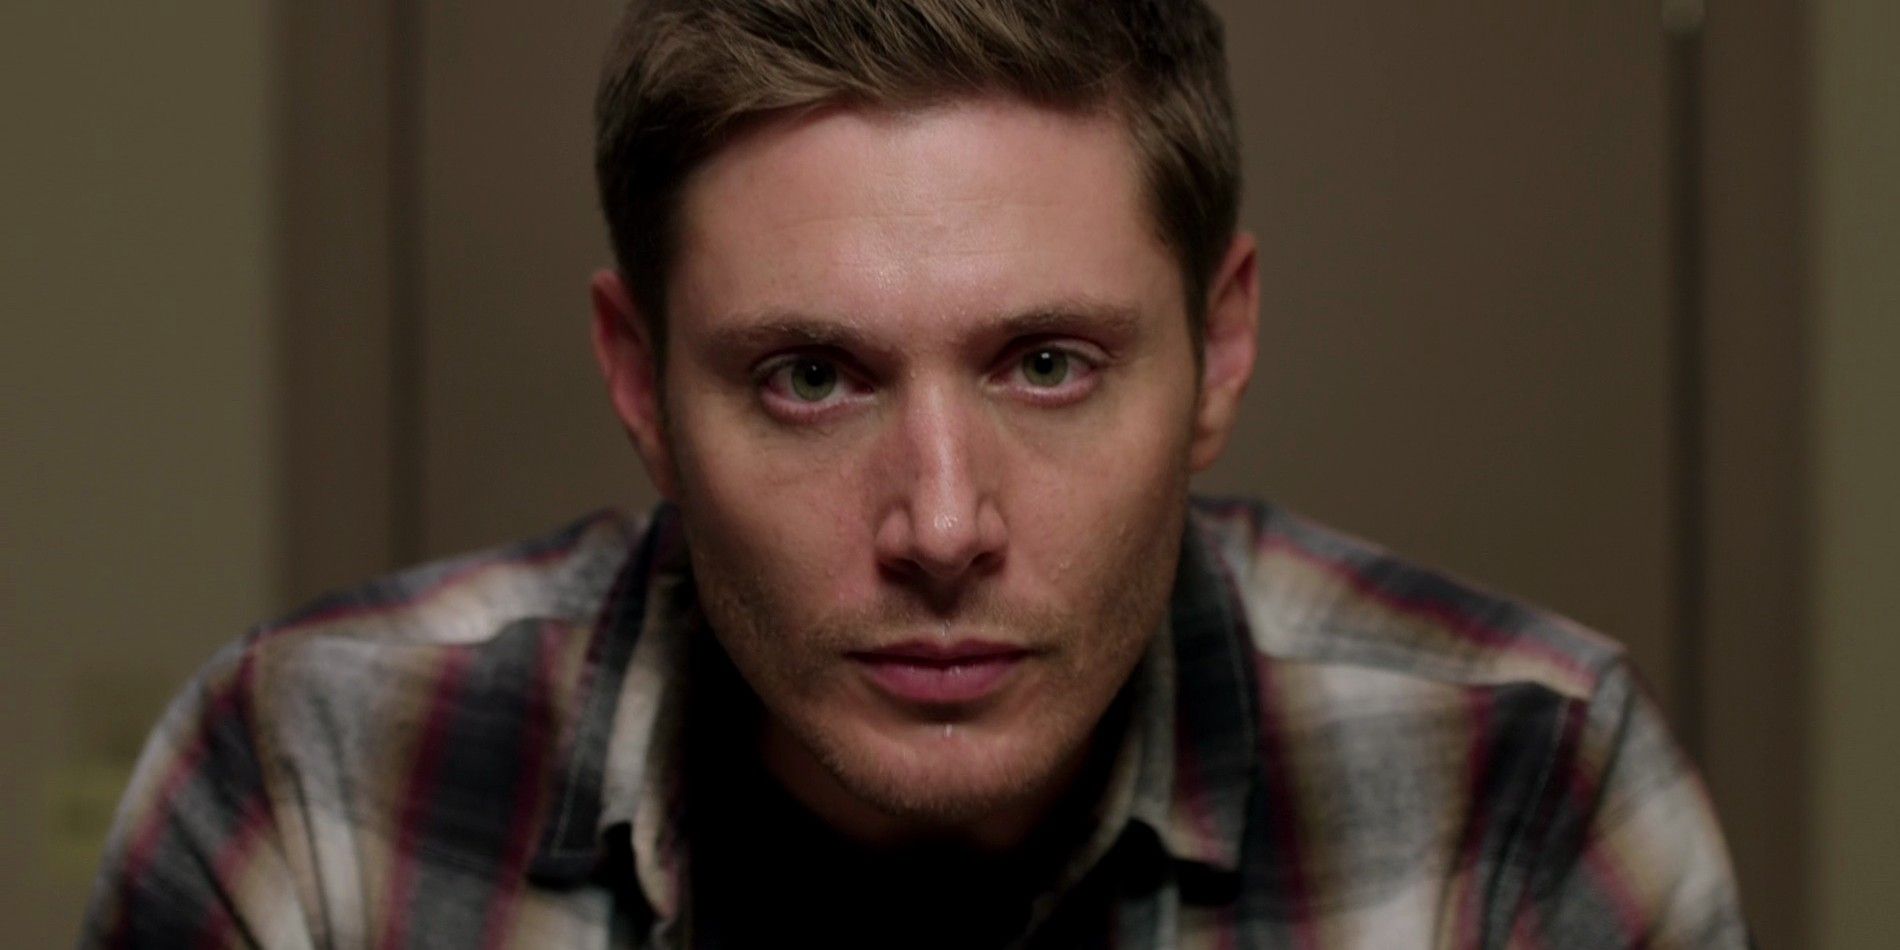 Jensen Ackles explica hilarantemente cómo Supernatural hizo que no le tuviera miedo a los fantasmas